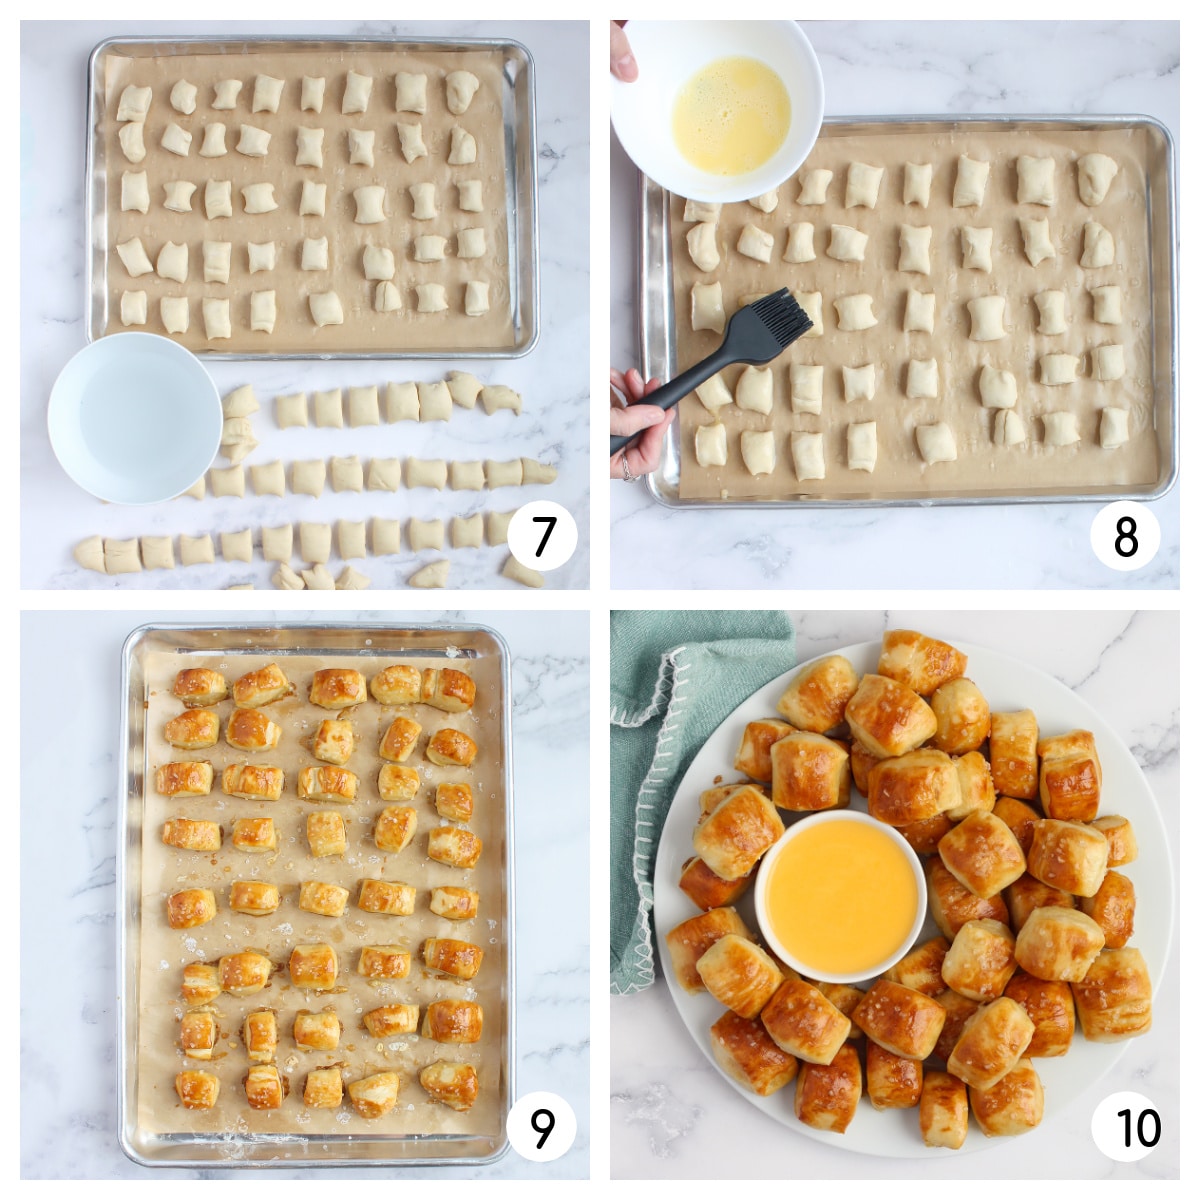 Imágenes de proceso que muestran cómo hacer esta receta casera de pretzels.